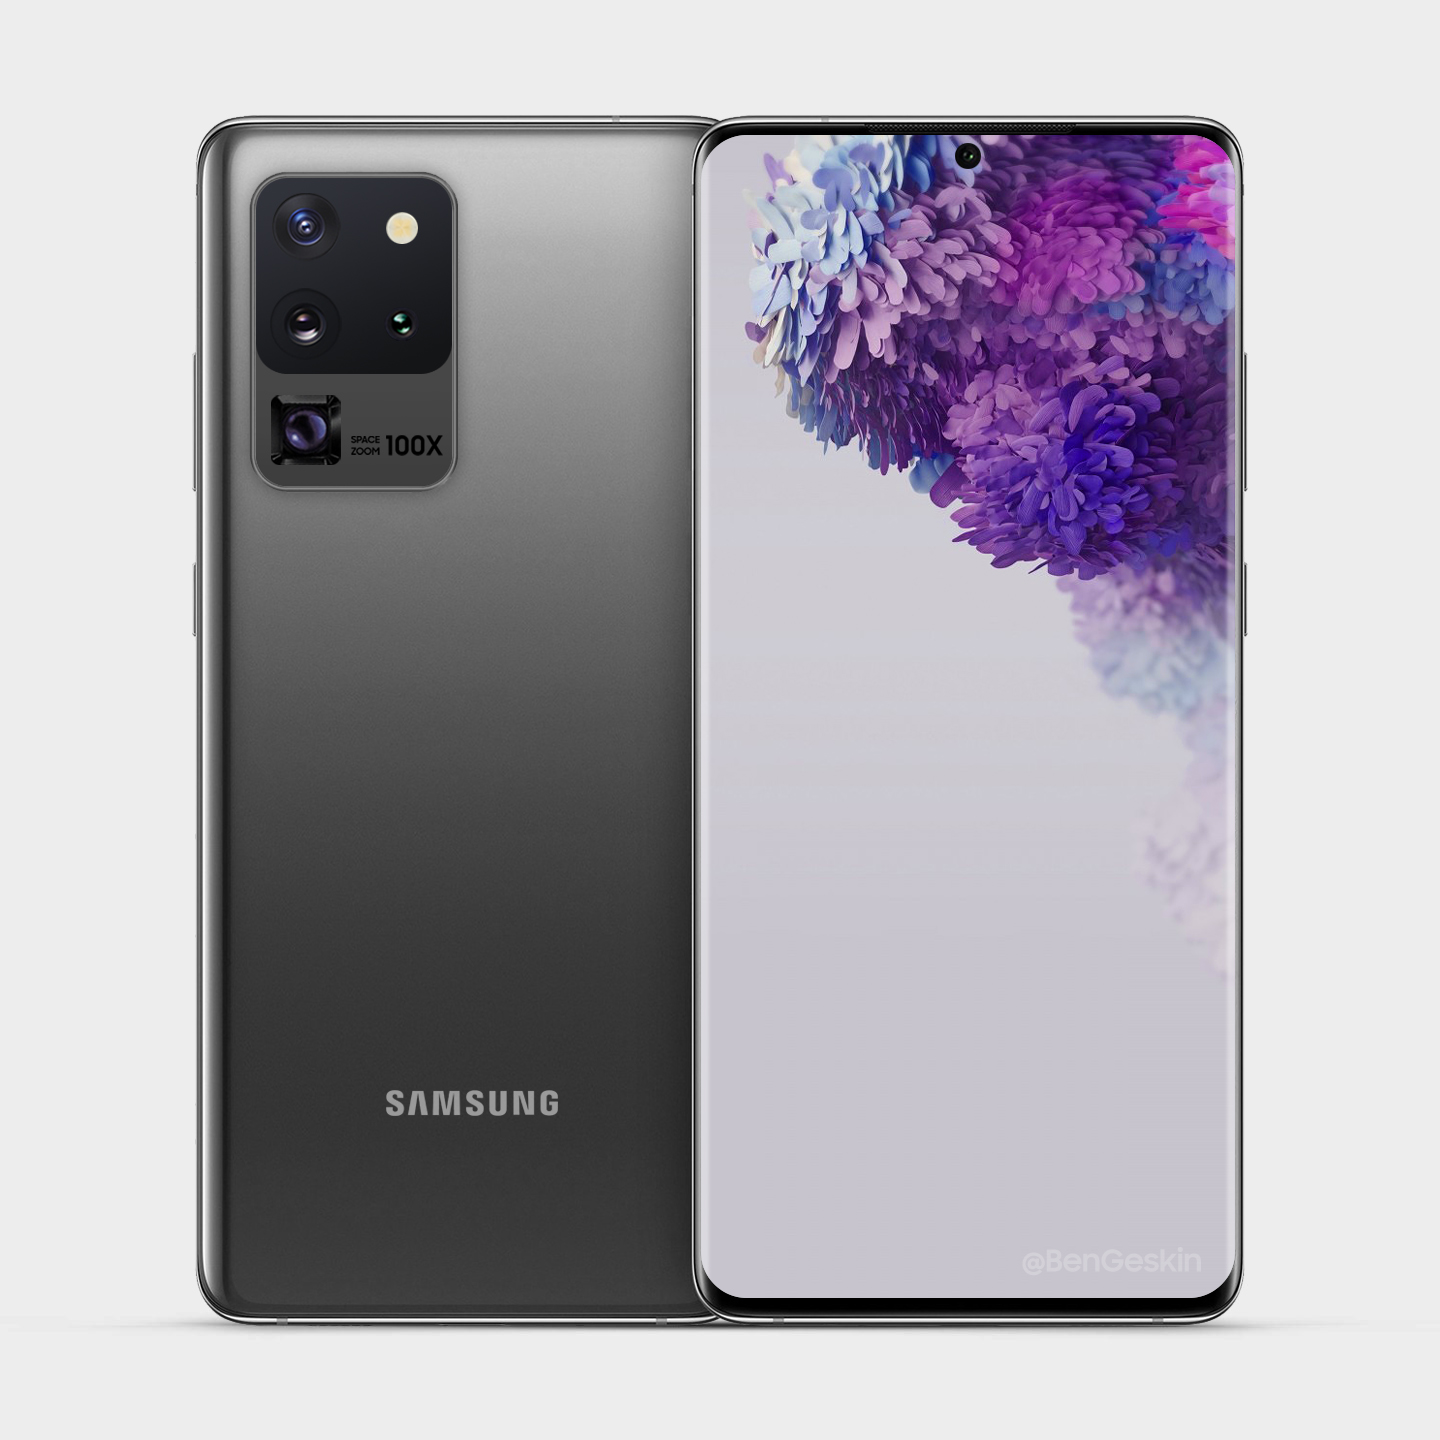 Galaxy S20 Ultra renk seçenekleri skalası genişleyecek! - ShiftDelete.Net (4)